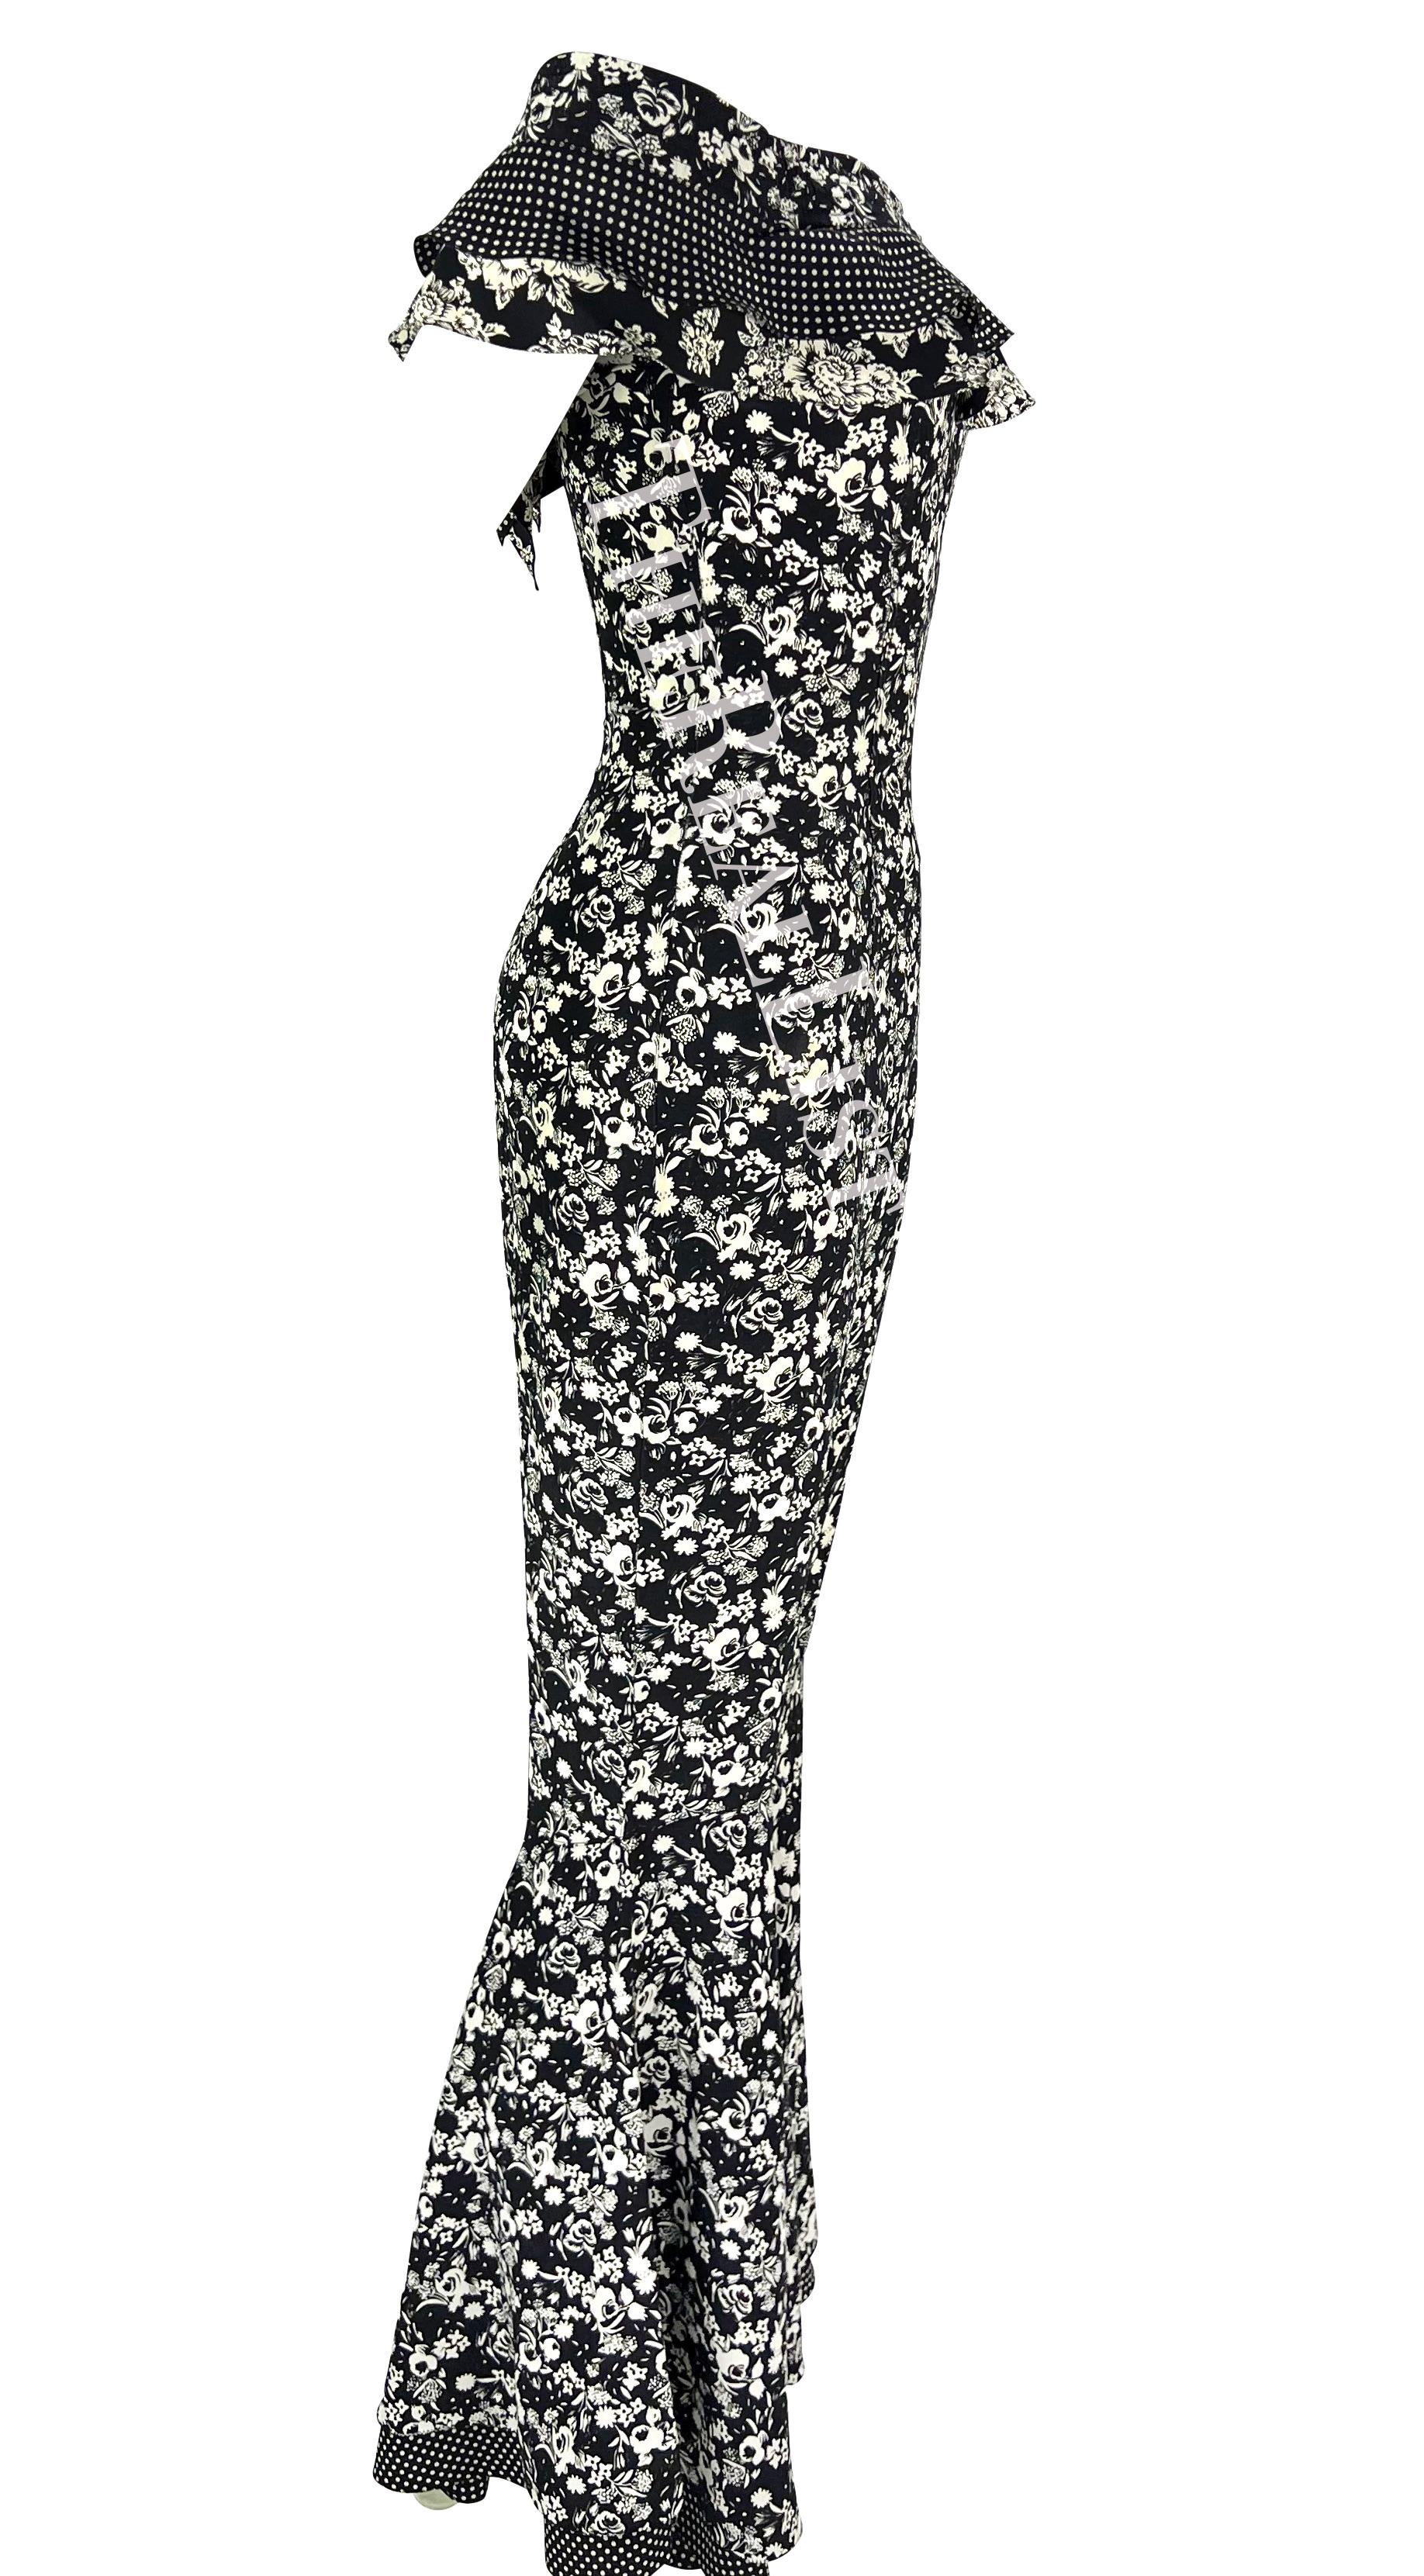 S/S 1993 - Gianni Versace - Combinaison évasée à fleurs noires et blanches à bascule cloche en vente 2